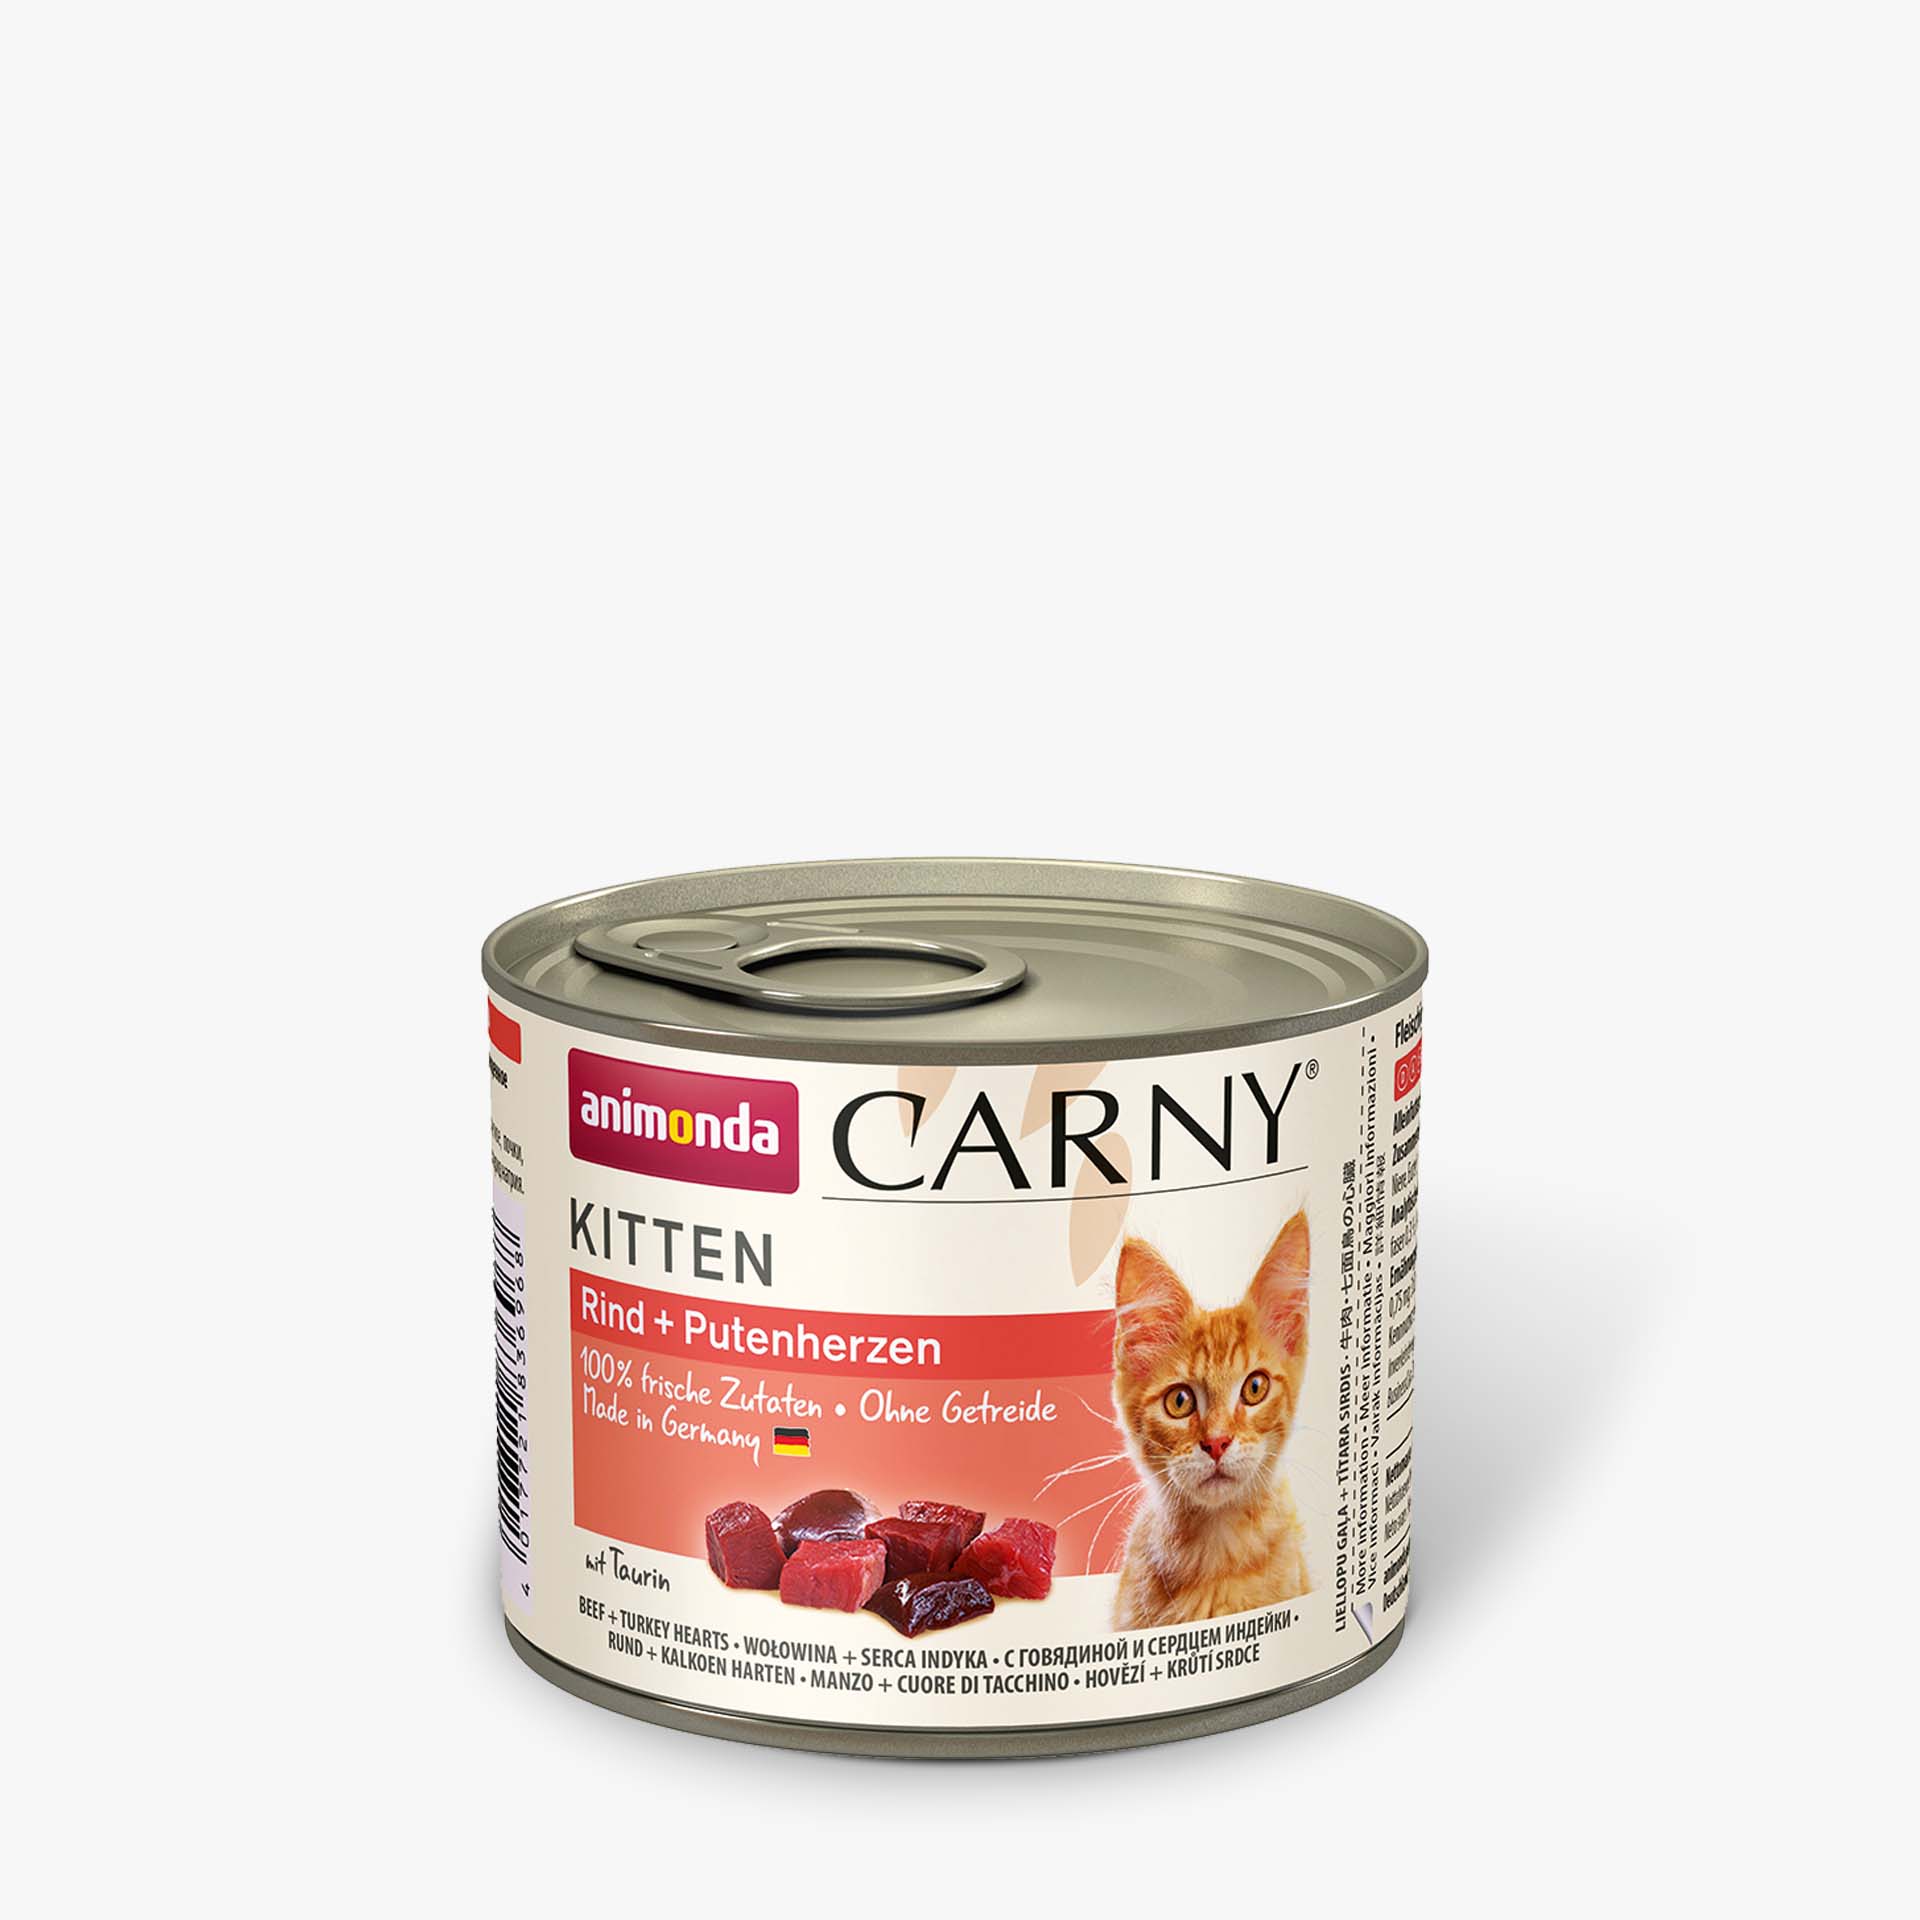 Carny Kitten Rind + Putenherzen